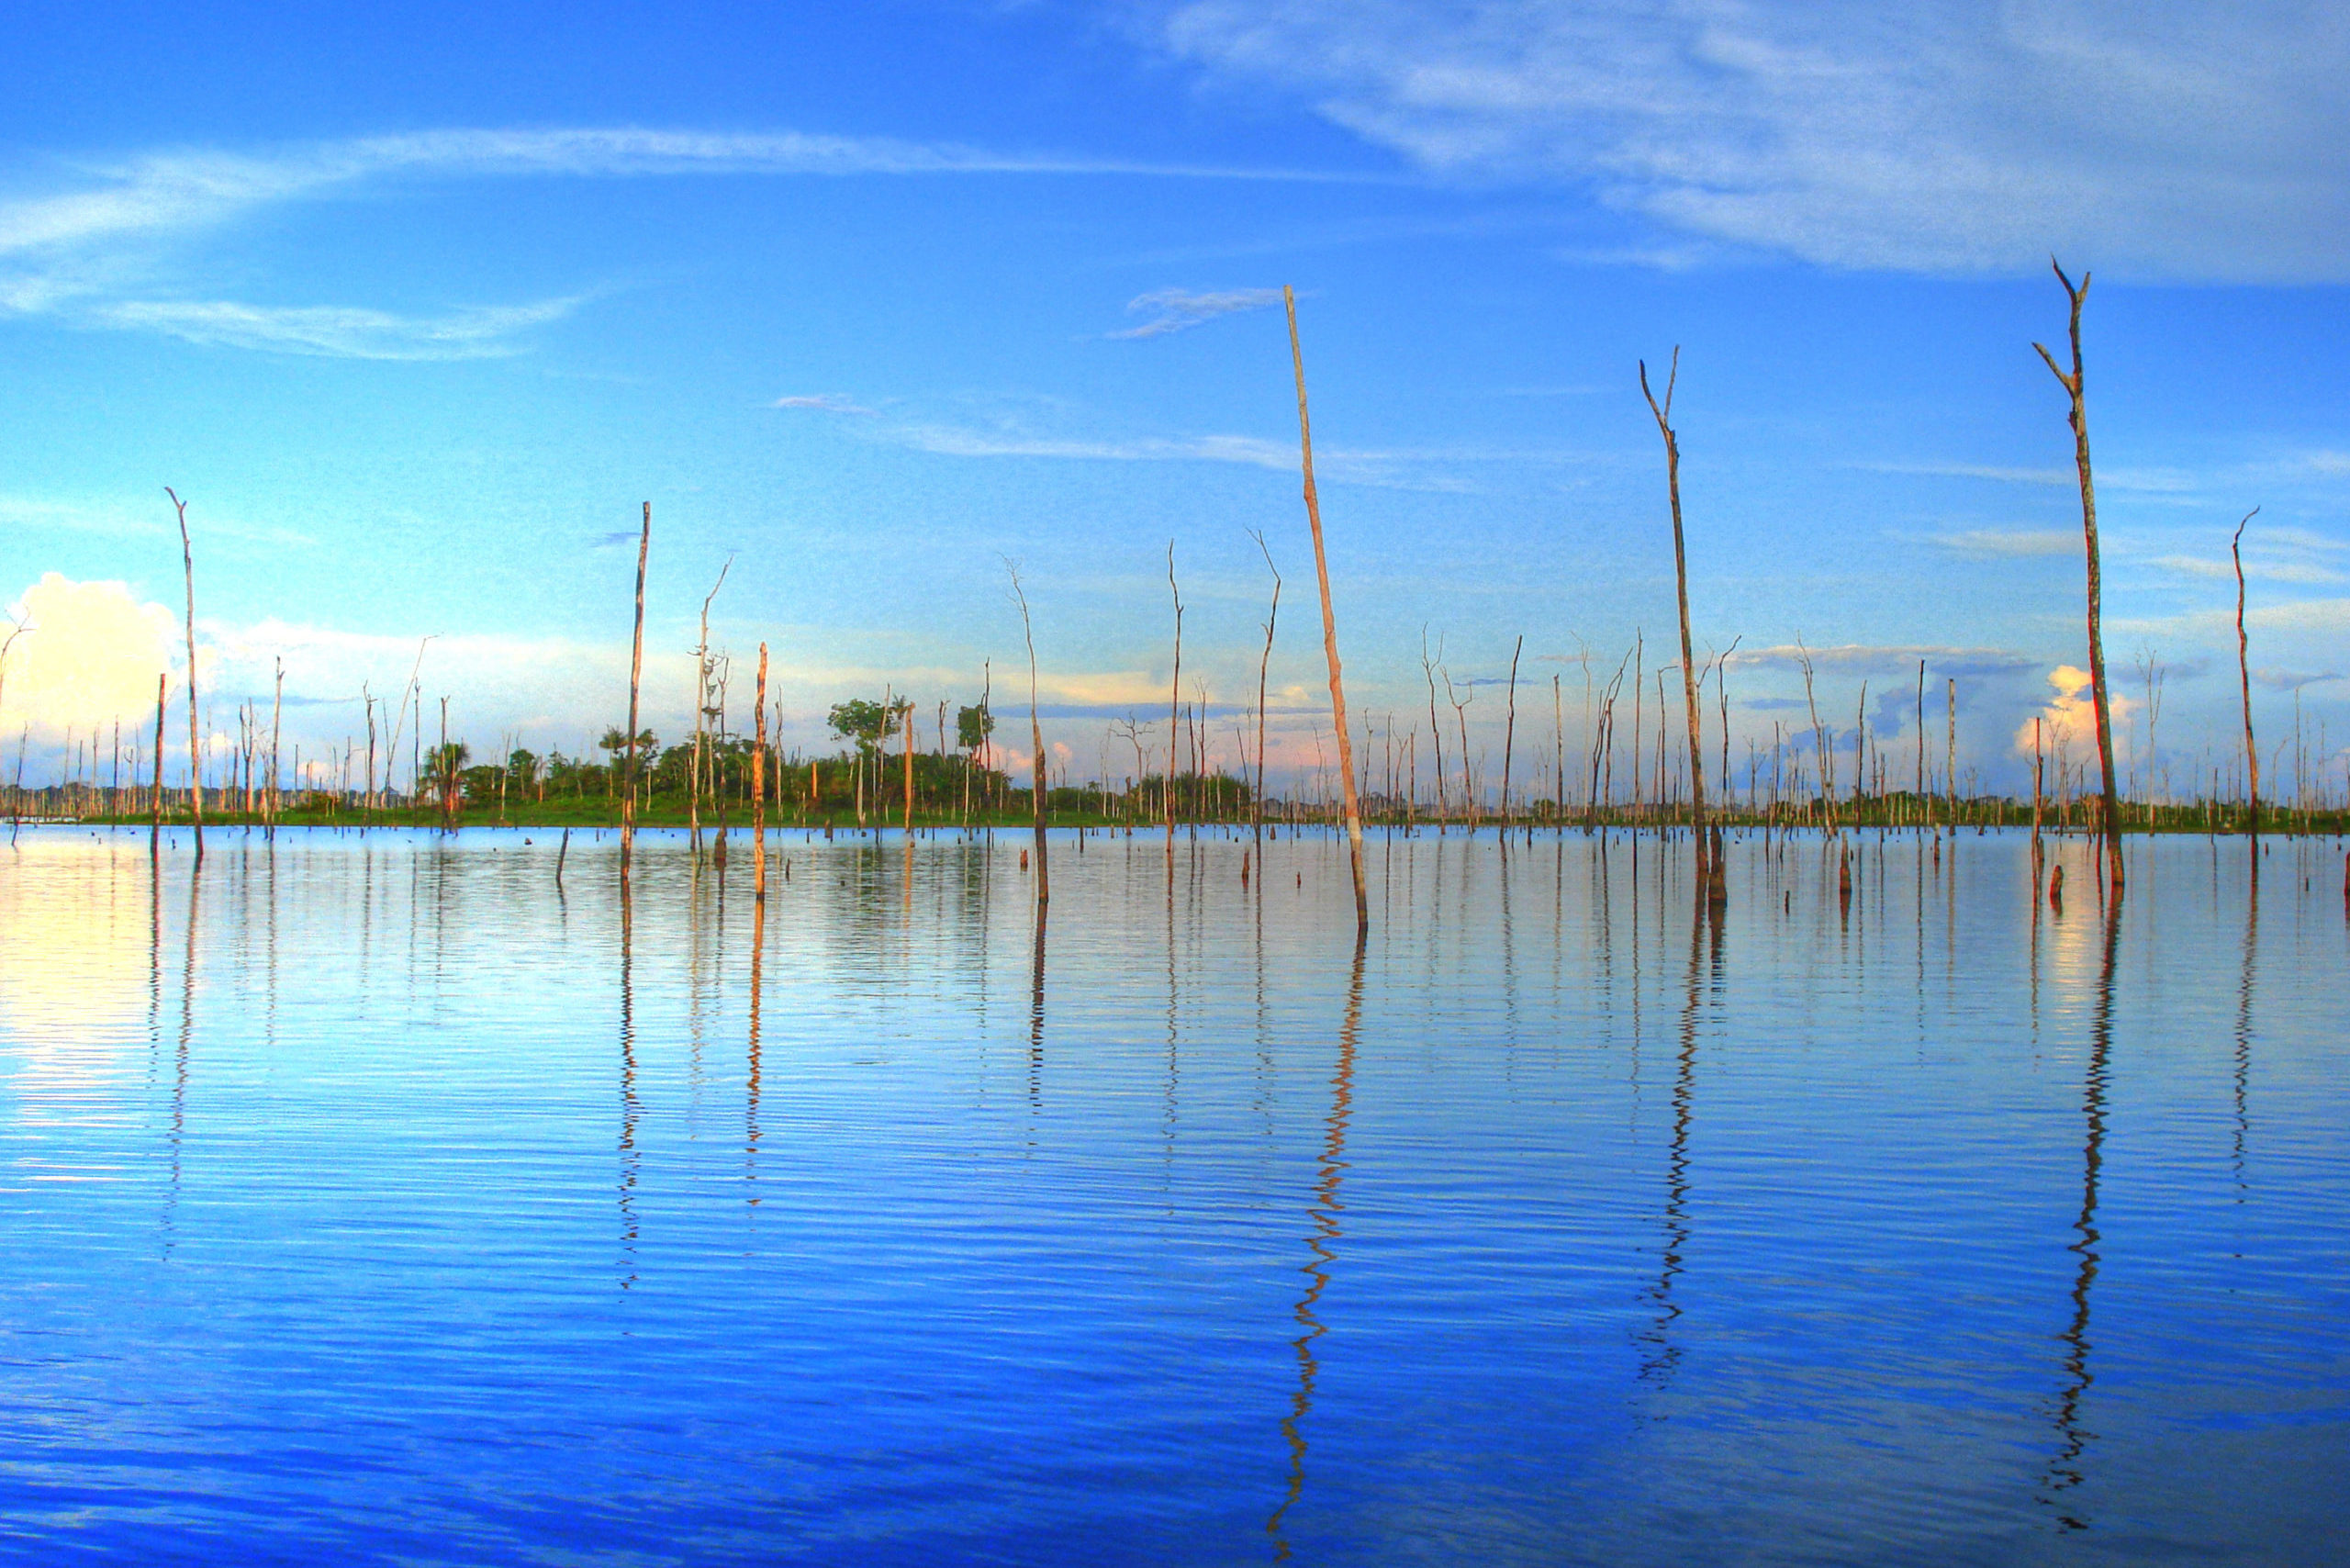 Eletronorte elege cinco projetos para produção de hidrogênio verde no Amazonas. Na imagem, Balbina Dam (Usina Hidreletrica de Balbina) (Foto: Seabirds/Wikimedia)